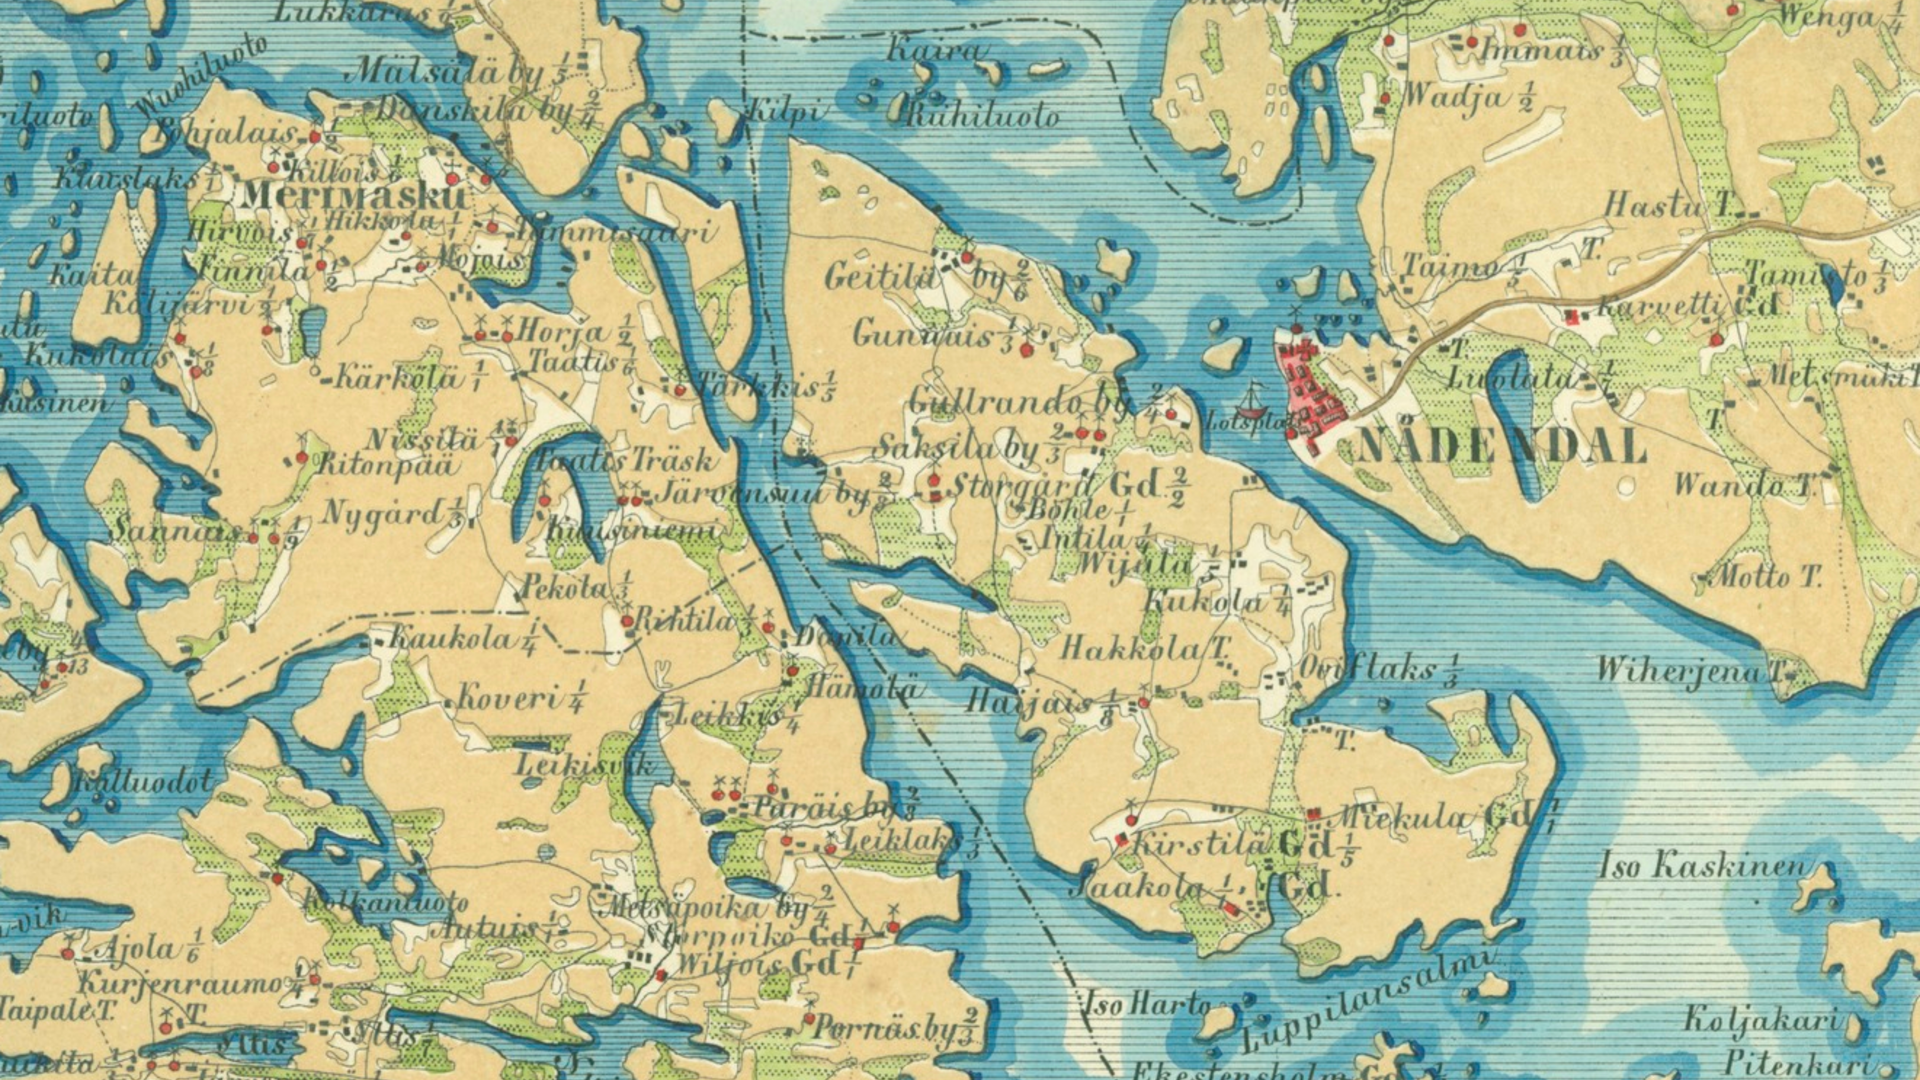 Vanha kartta 1855